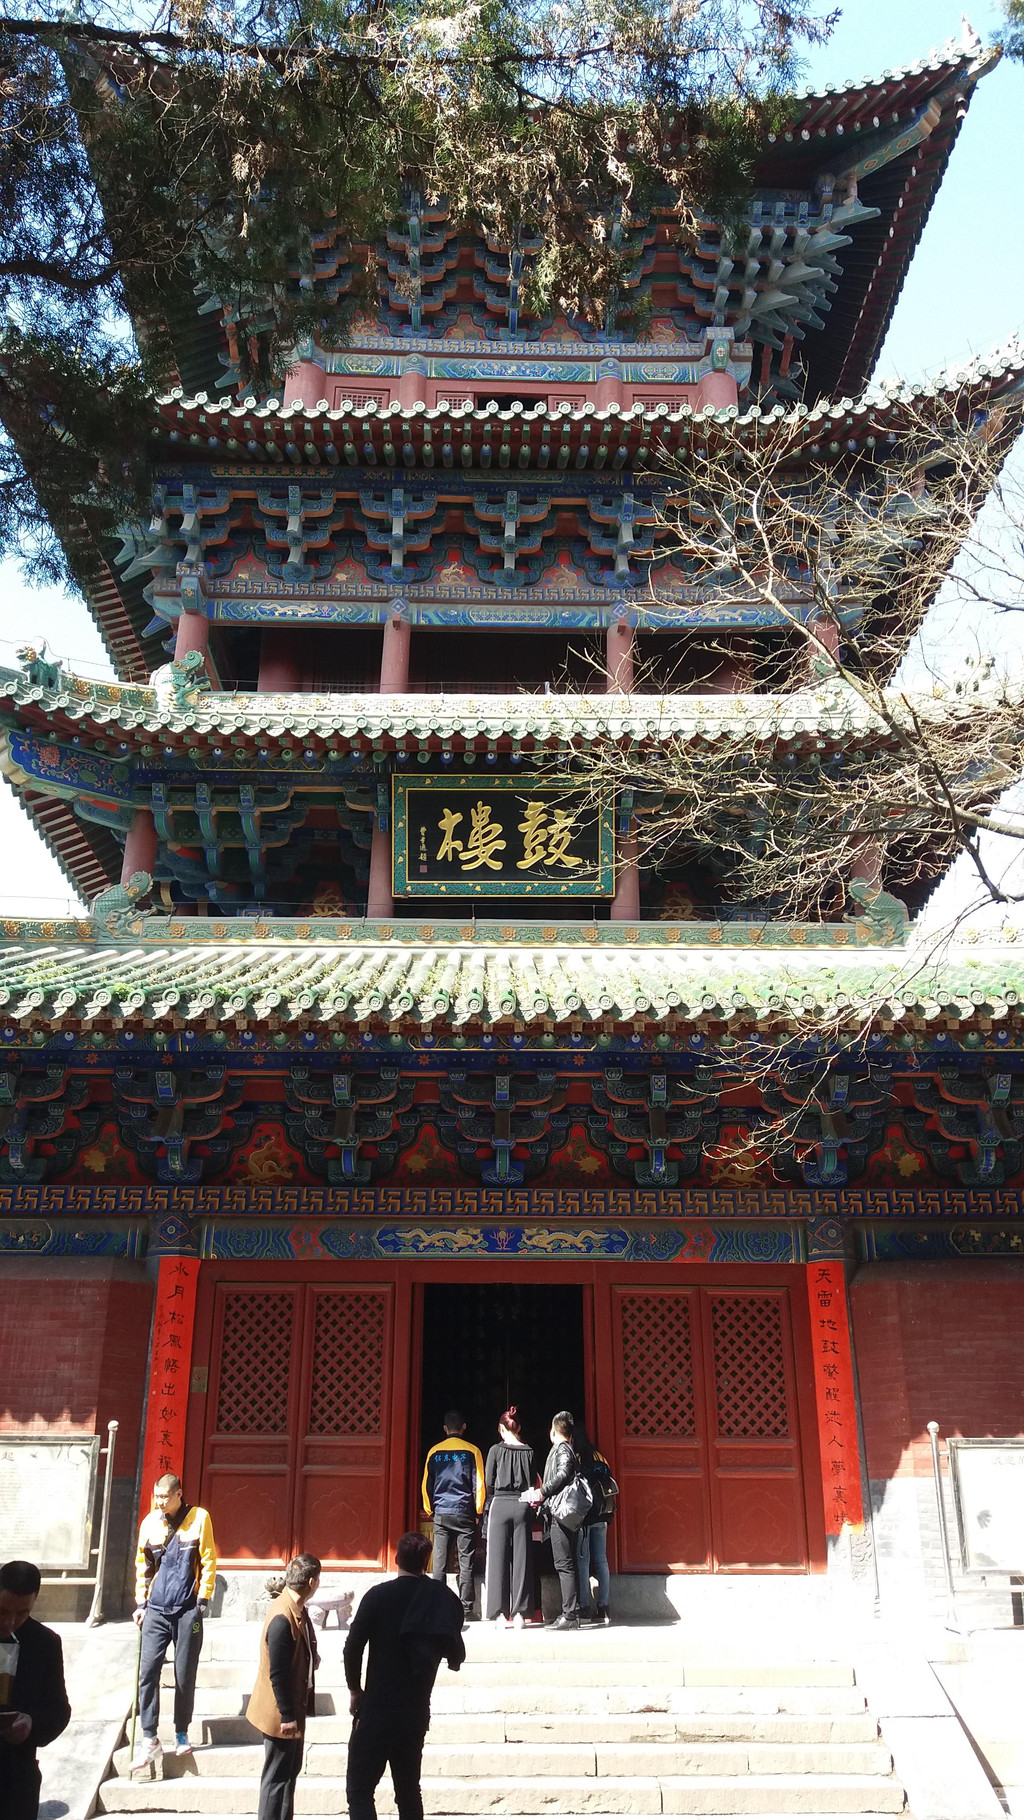 鼓楼鼓楼位于少林寺大雄宝殿西南侧,与钟楼对称.原为转轮藏阁.